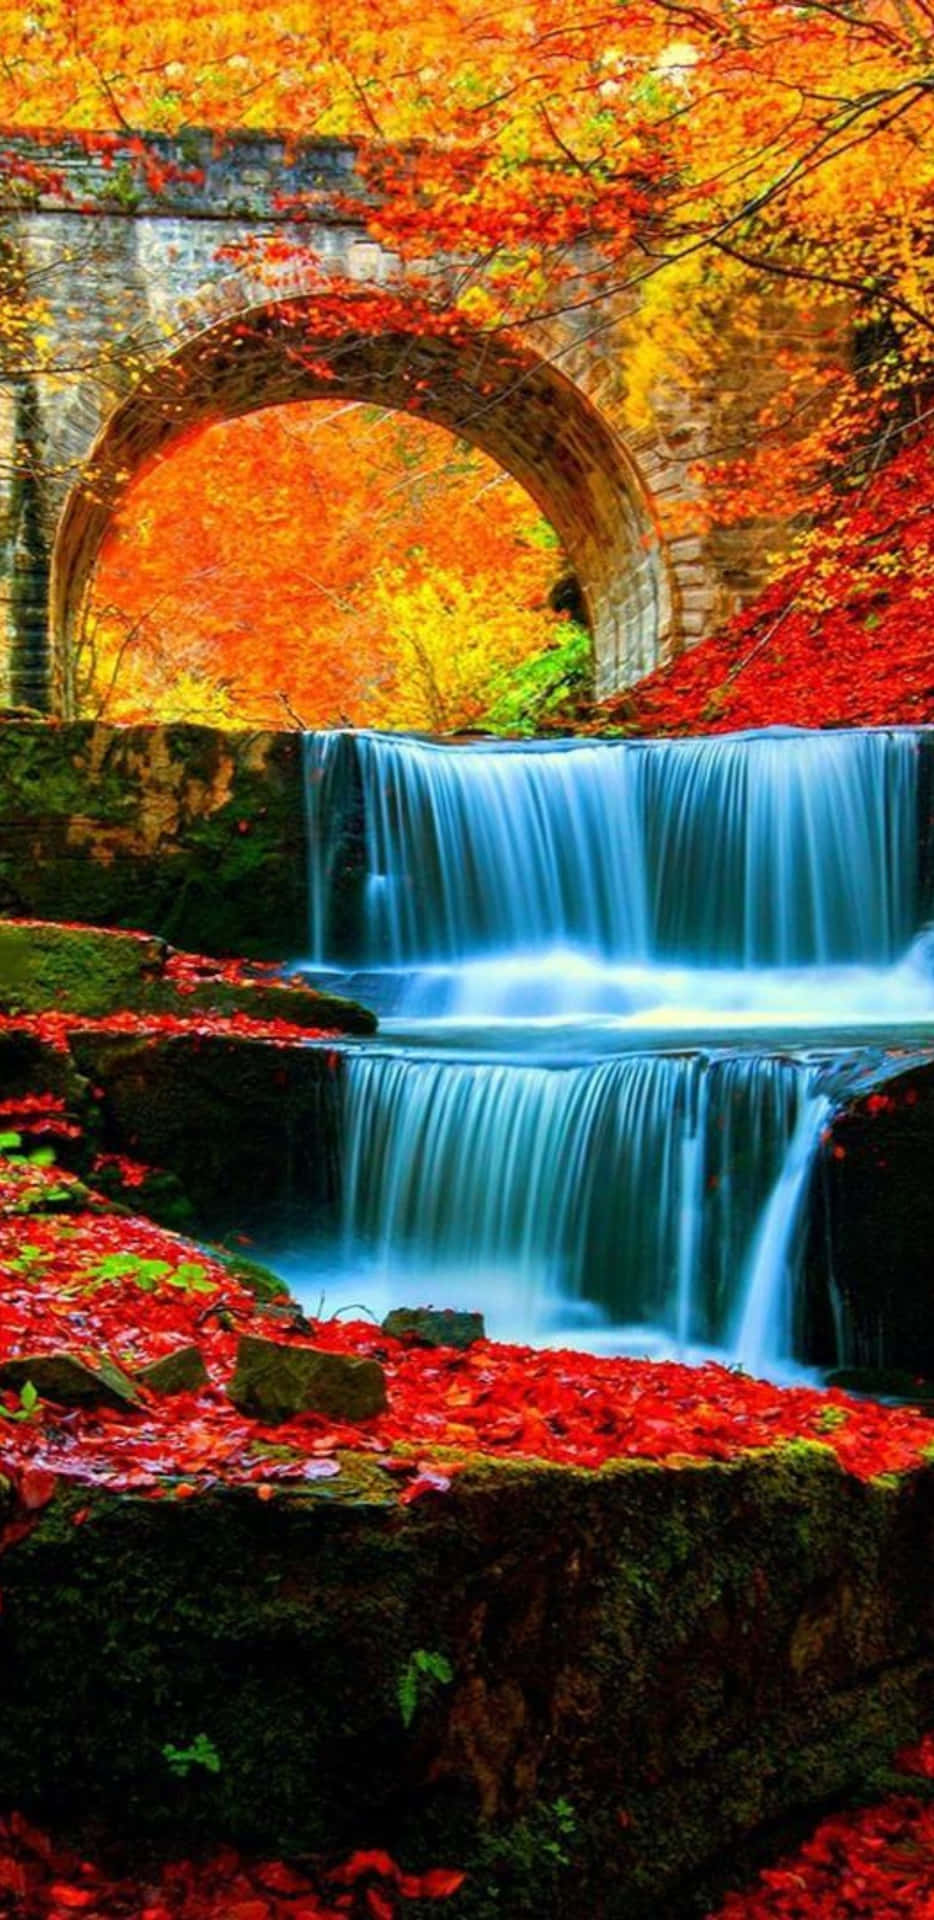 Pixel 3XL Autumn Background River Stream Under The Bridge